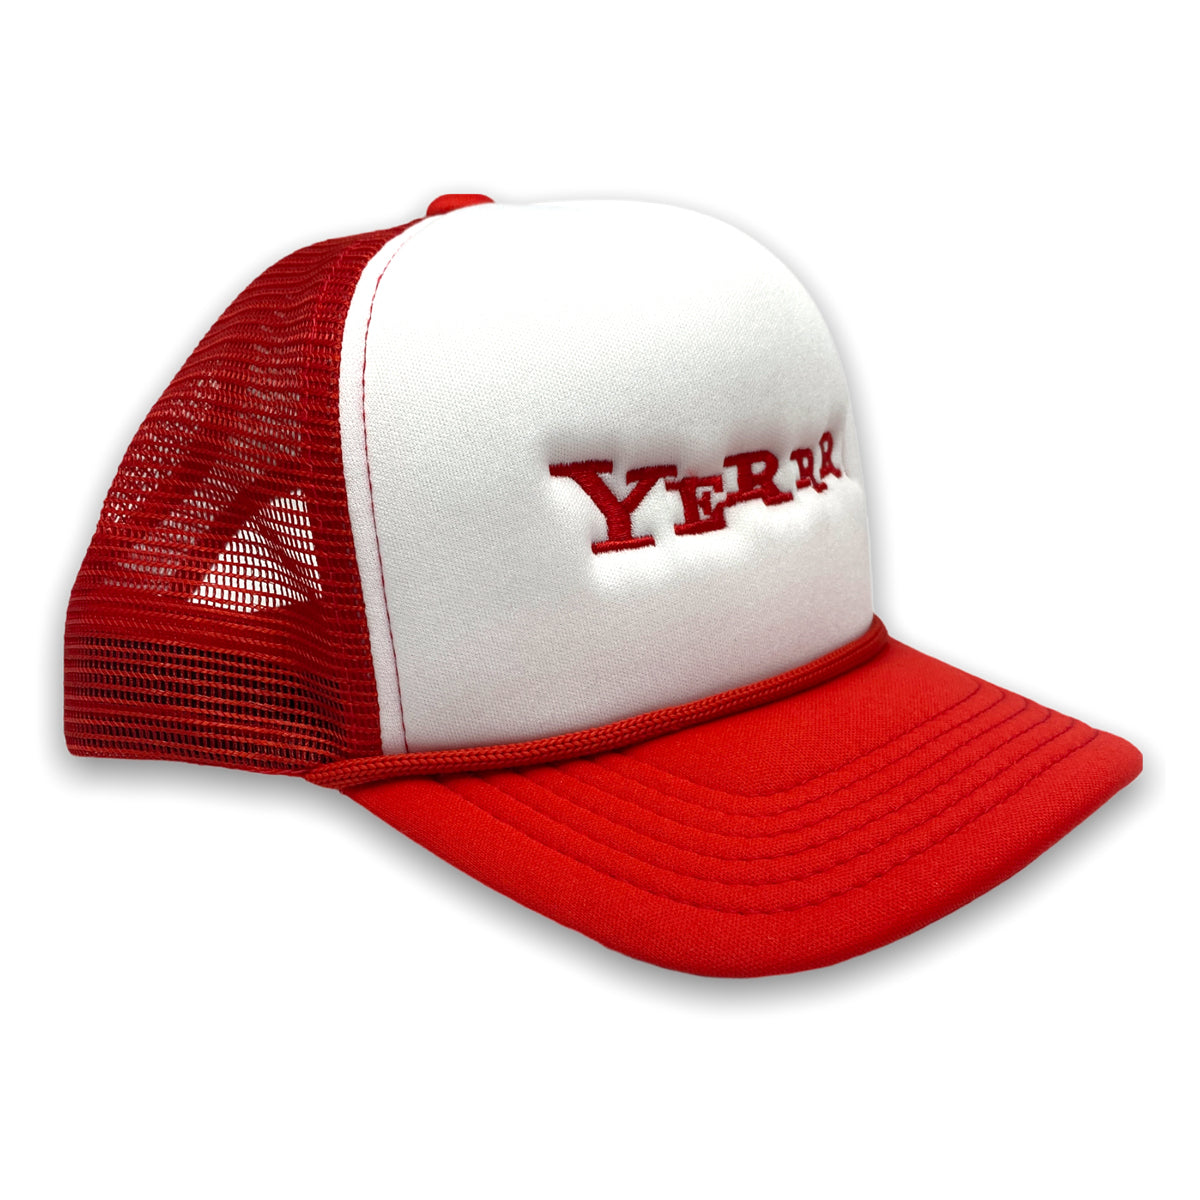 Yerrrhoo! Trucker Hat (Red/White)